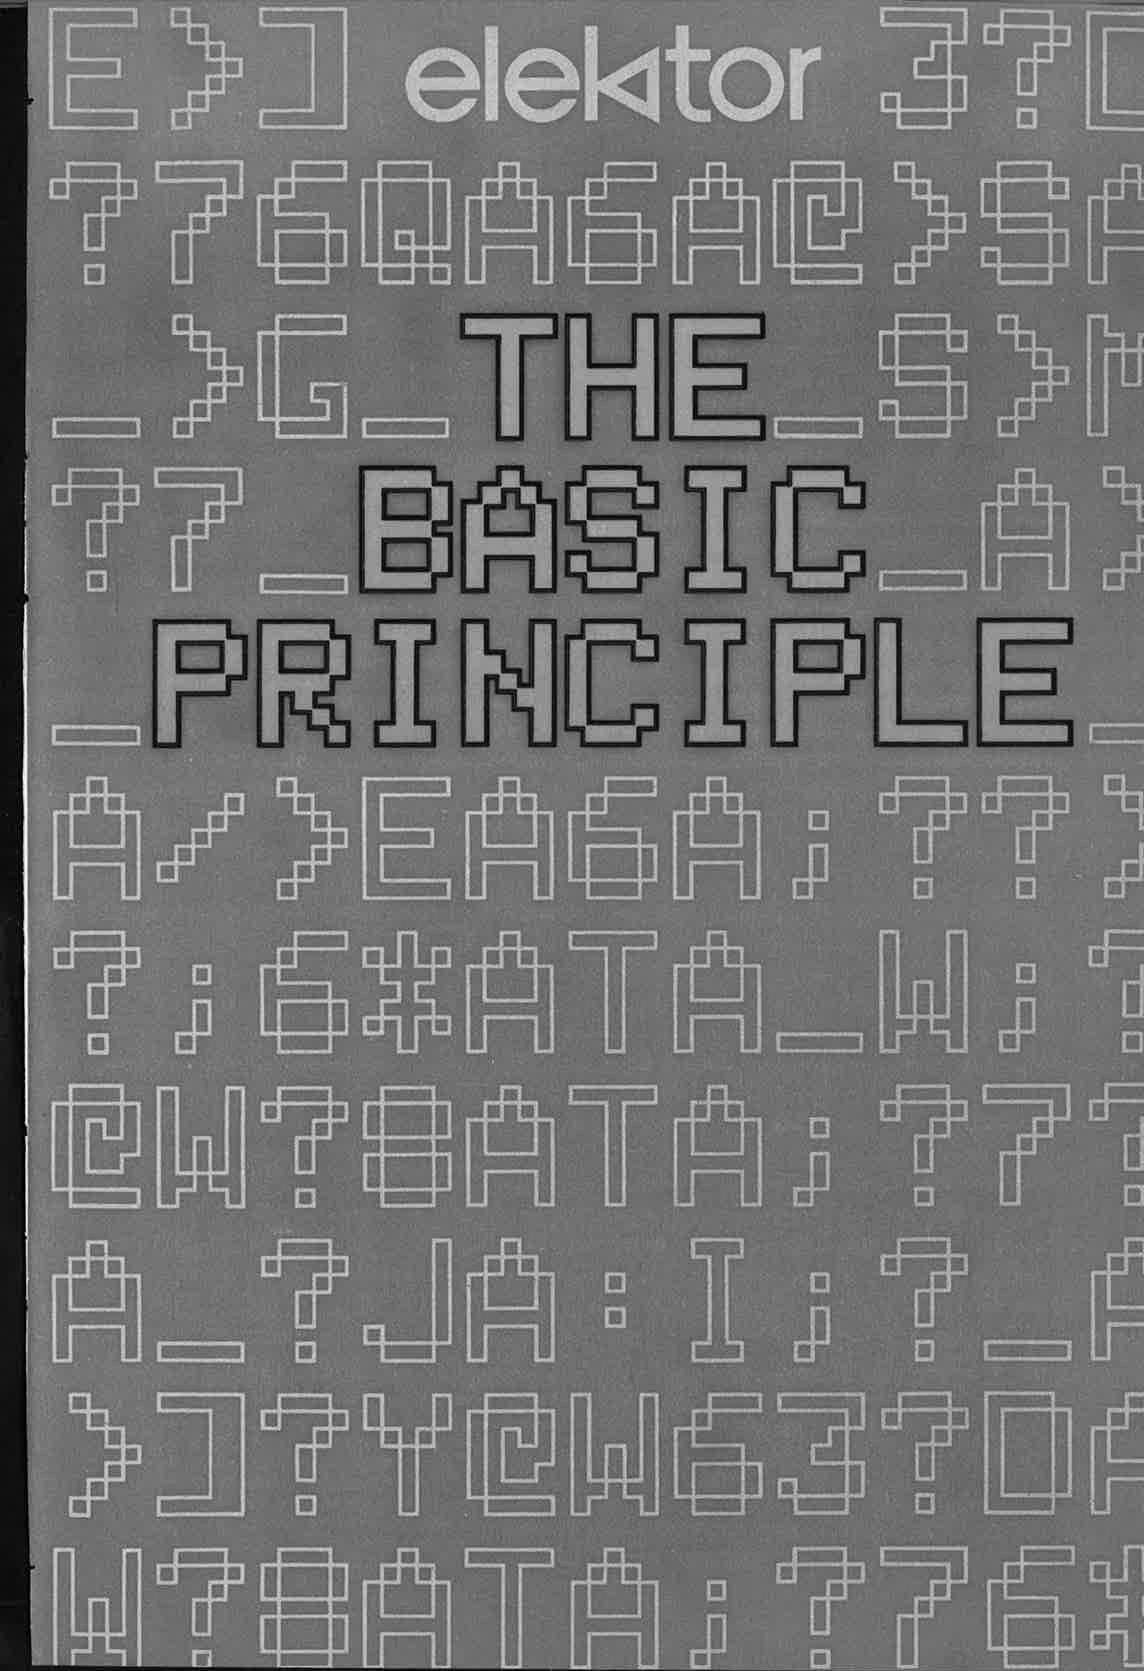 The basic principle